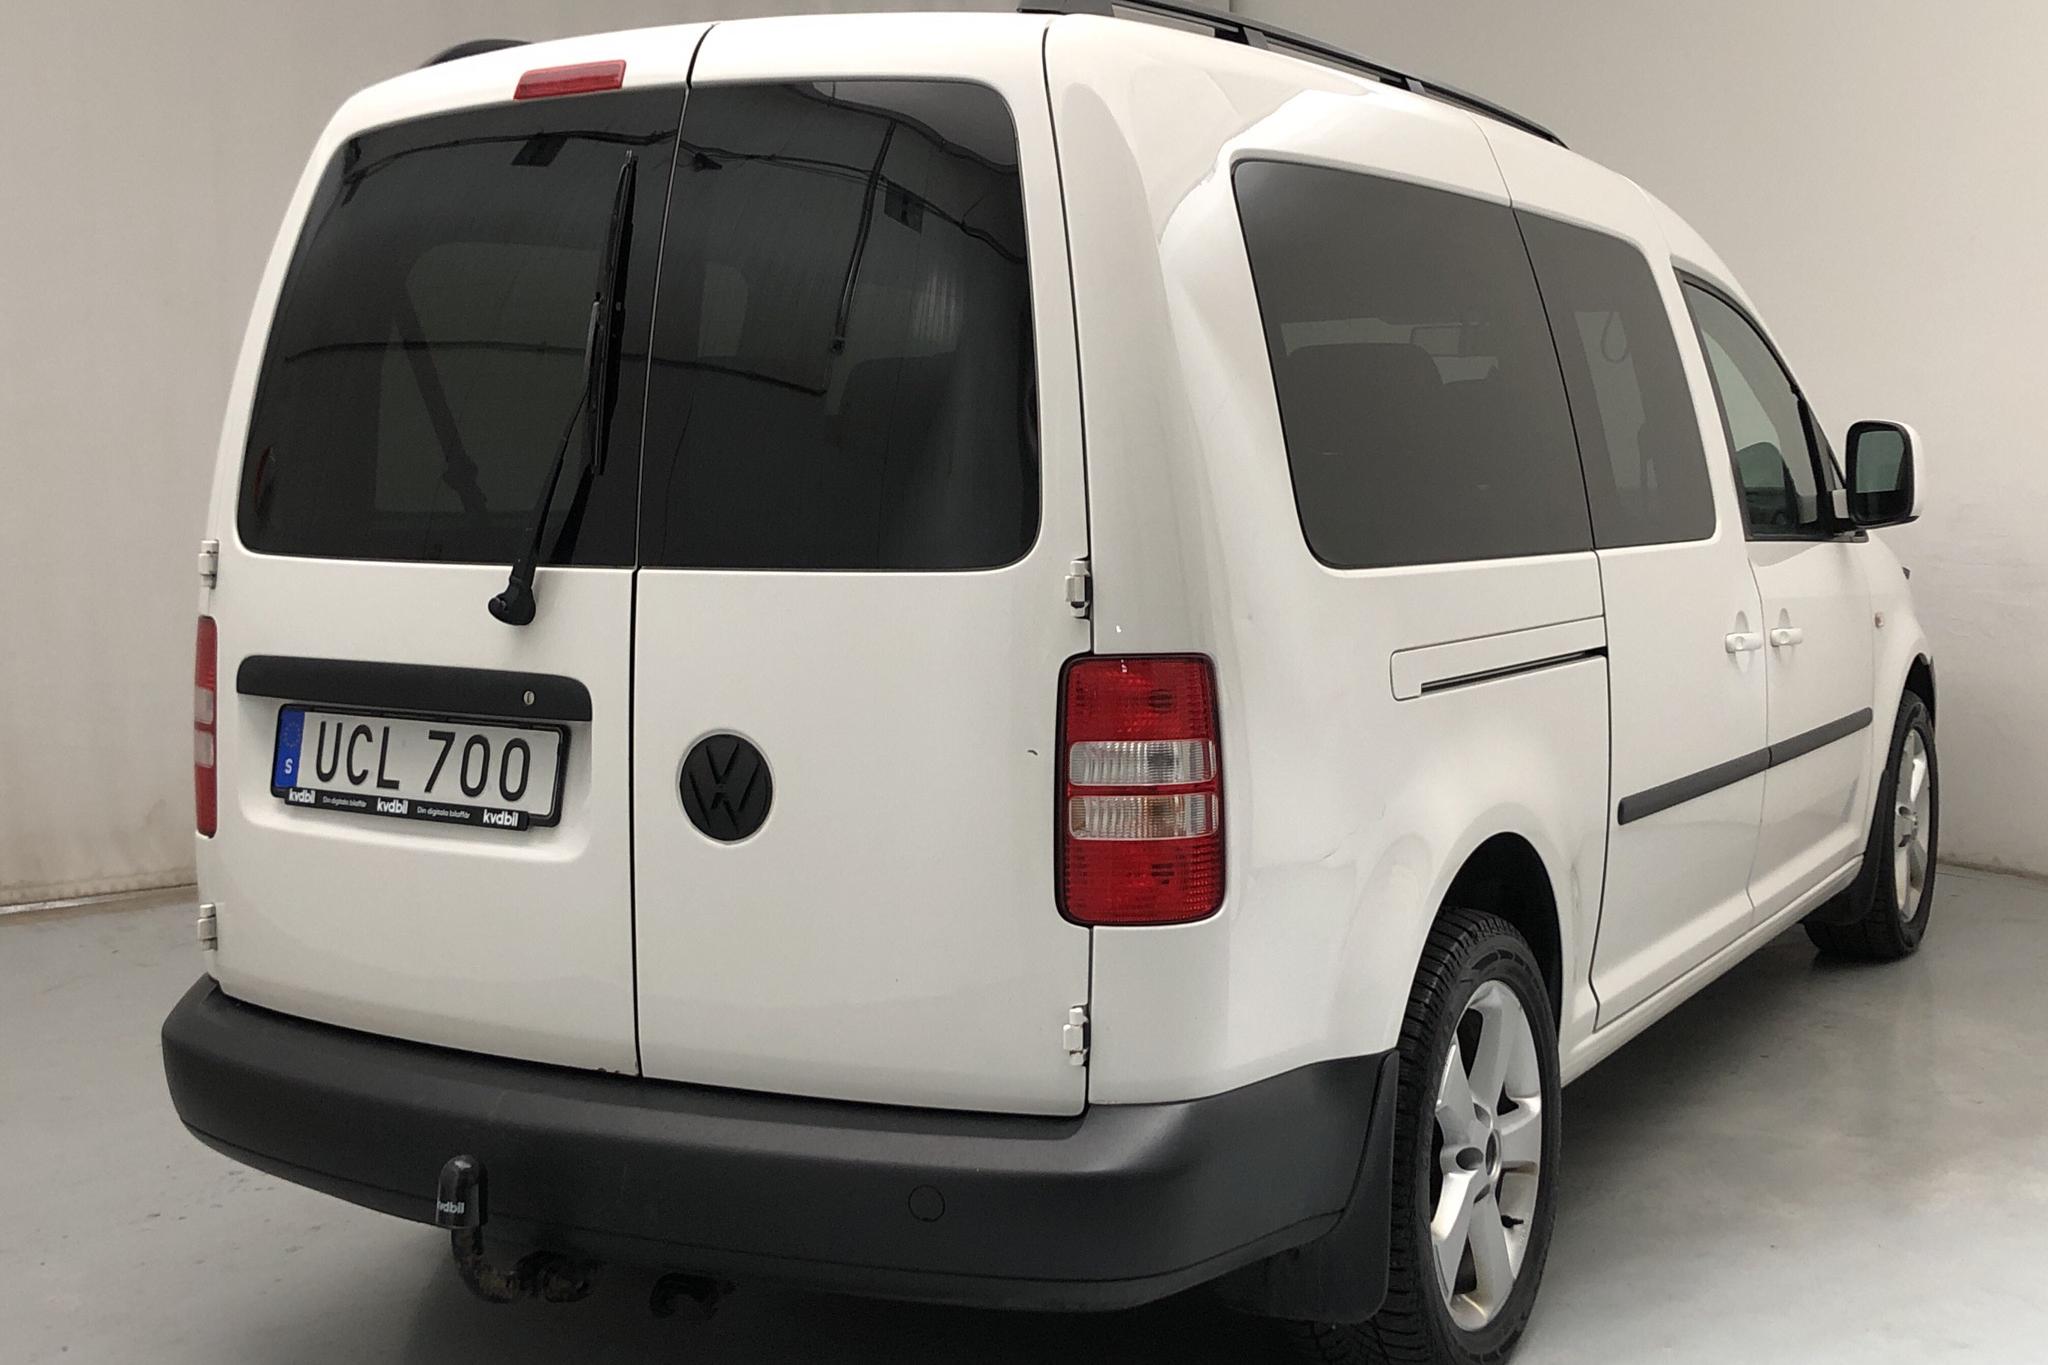 VW Caddy MPV Maxi 1.6 TDI (102hk) - 187 400 km - Manual - white - 2015